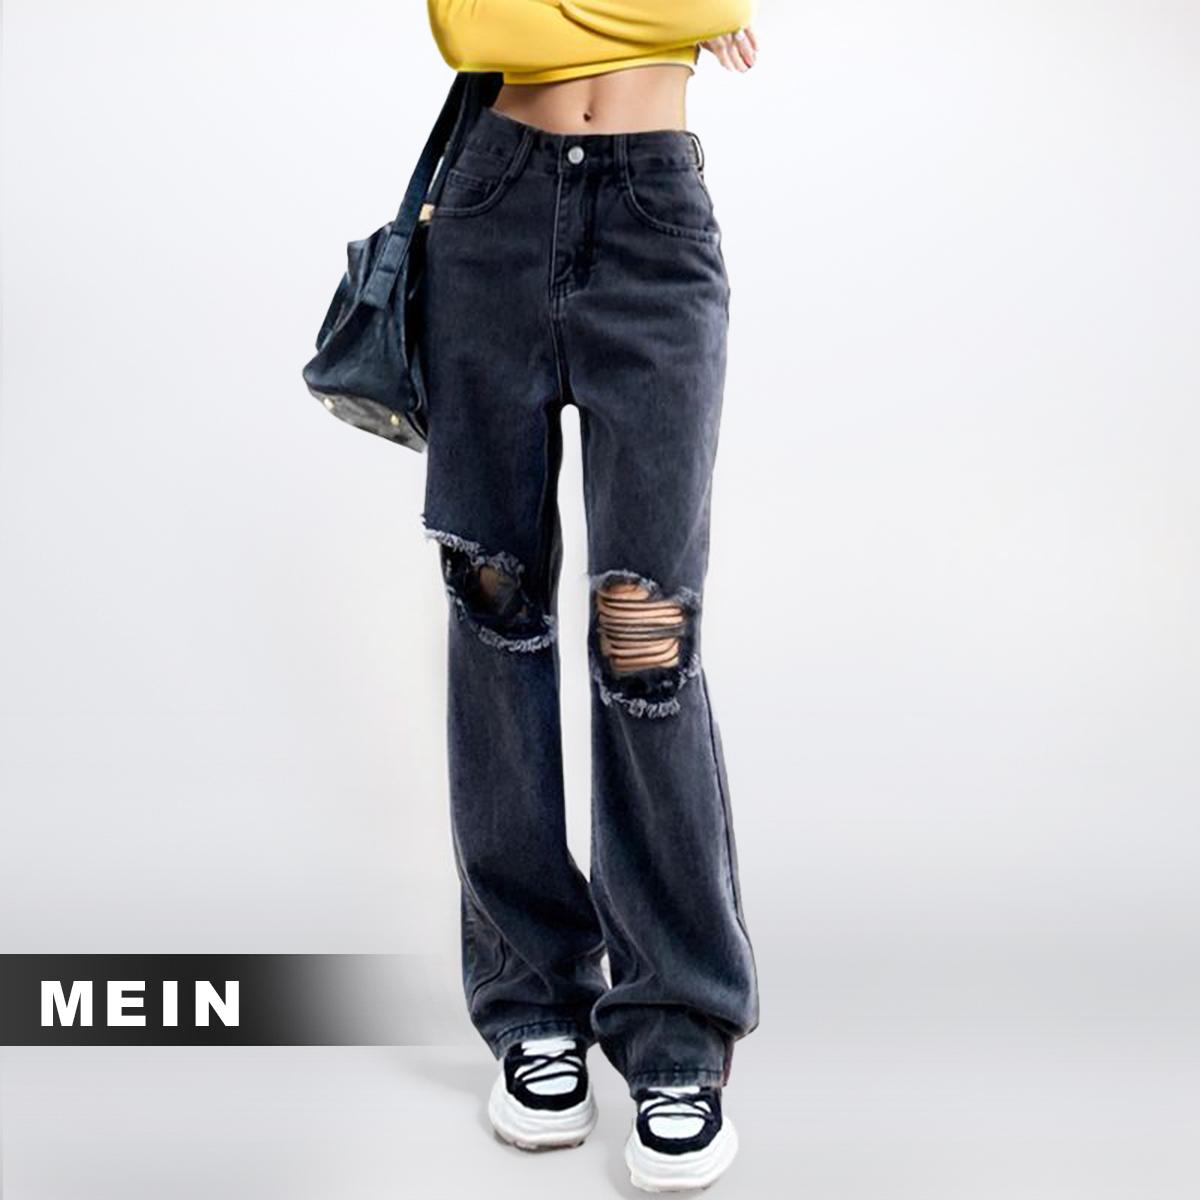 [MEIN] 52384 Celana Panjang Highwaist Wanita Premium Polos Ripped Jeans Hitam